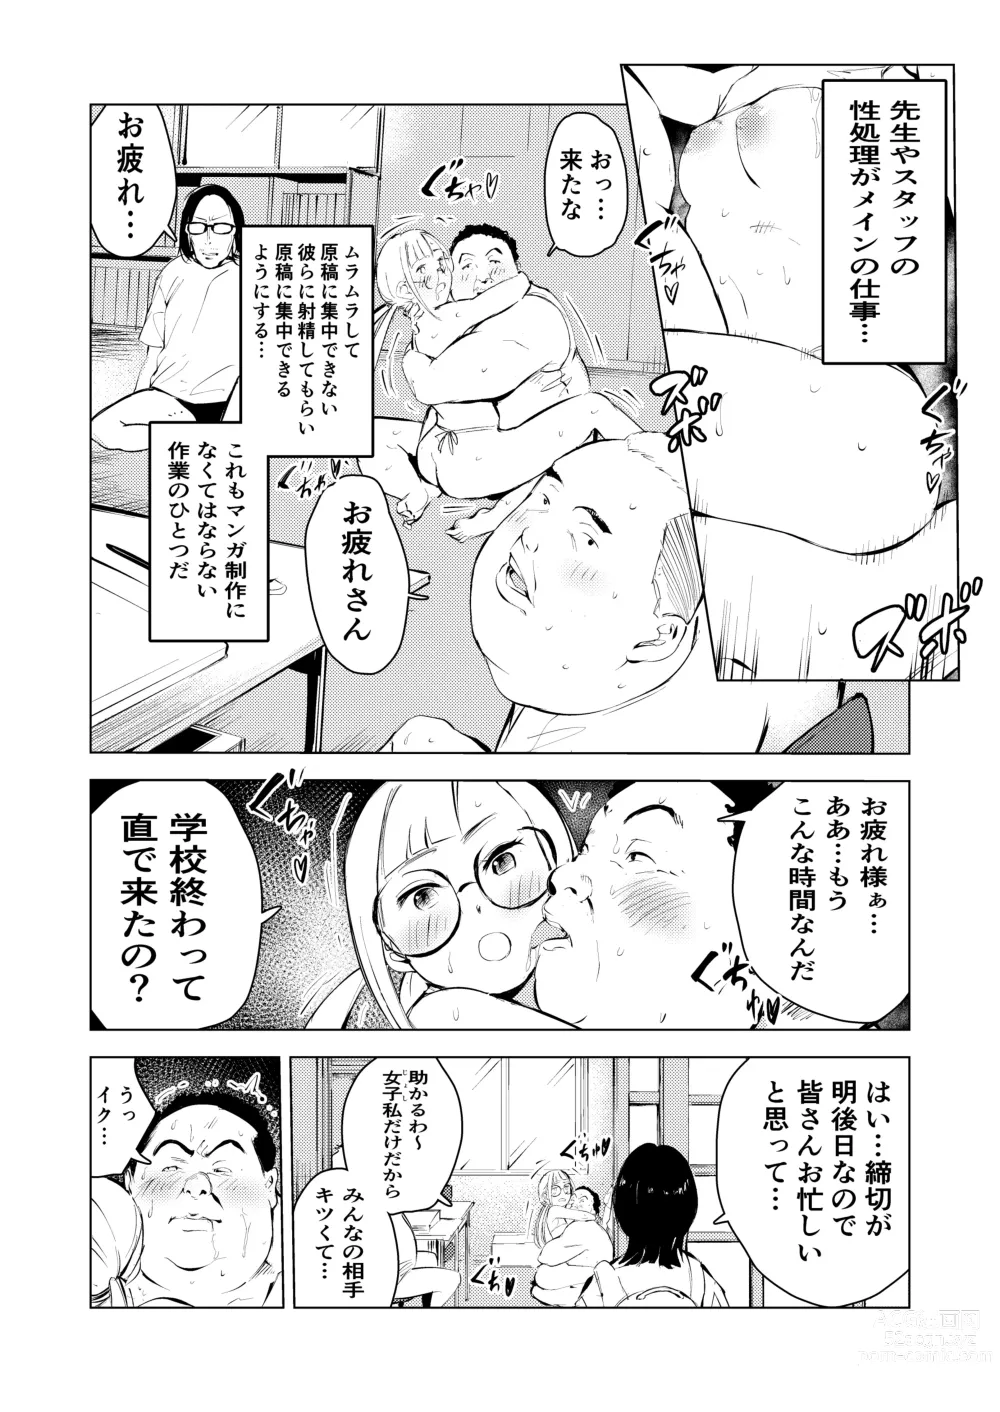 Page 6 of doujinshi Ashisutanto no oshigoto